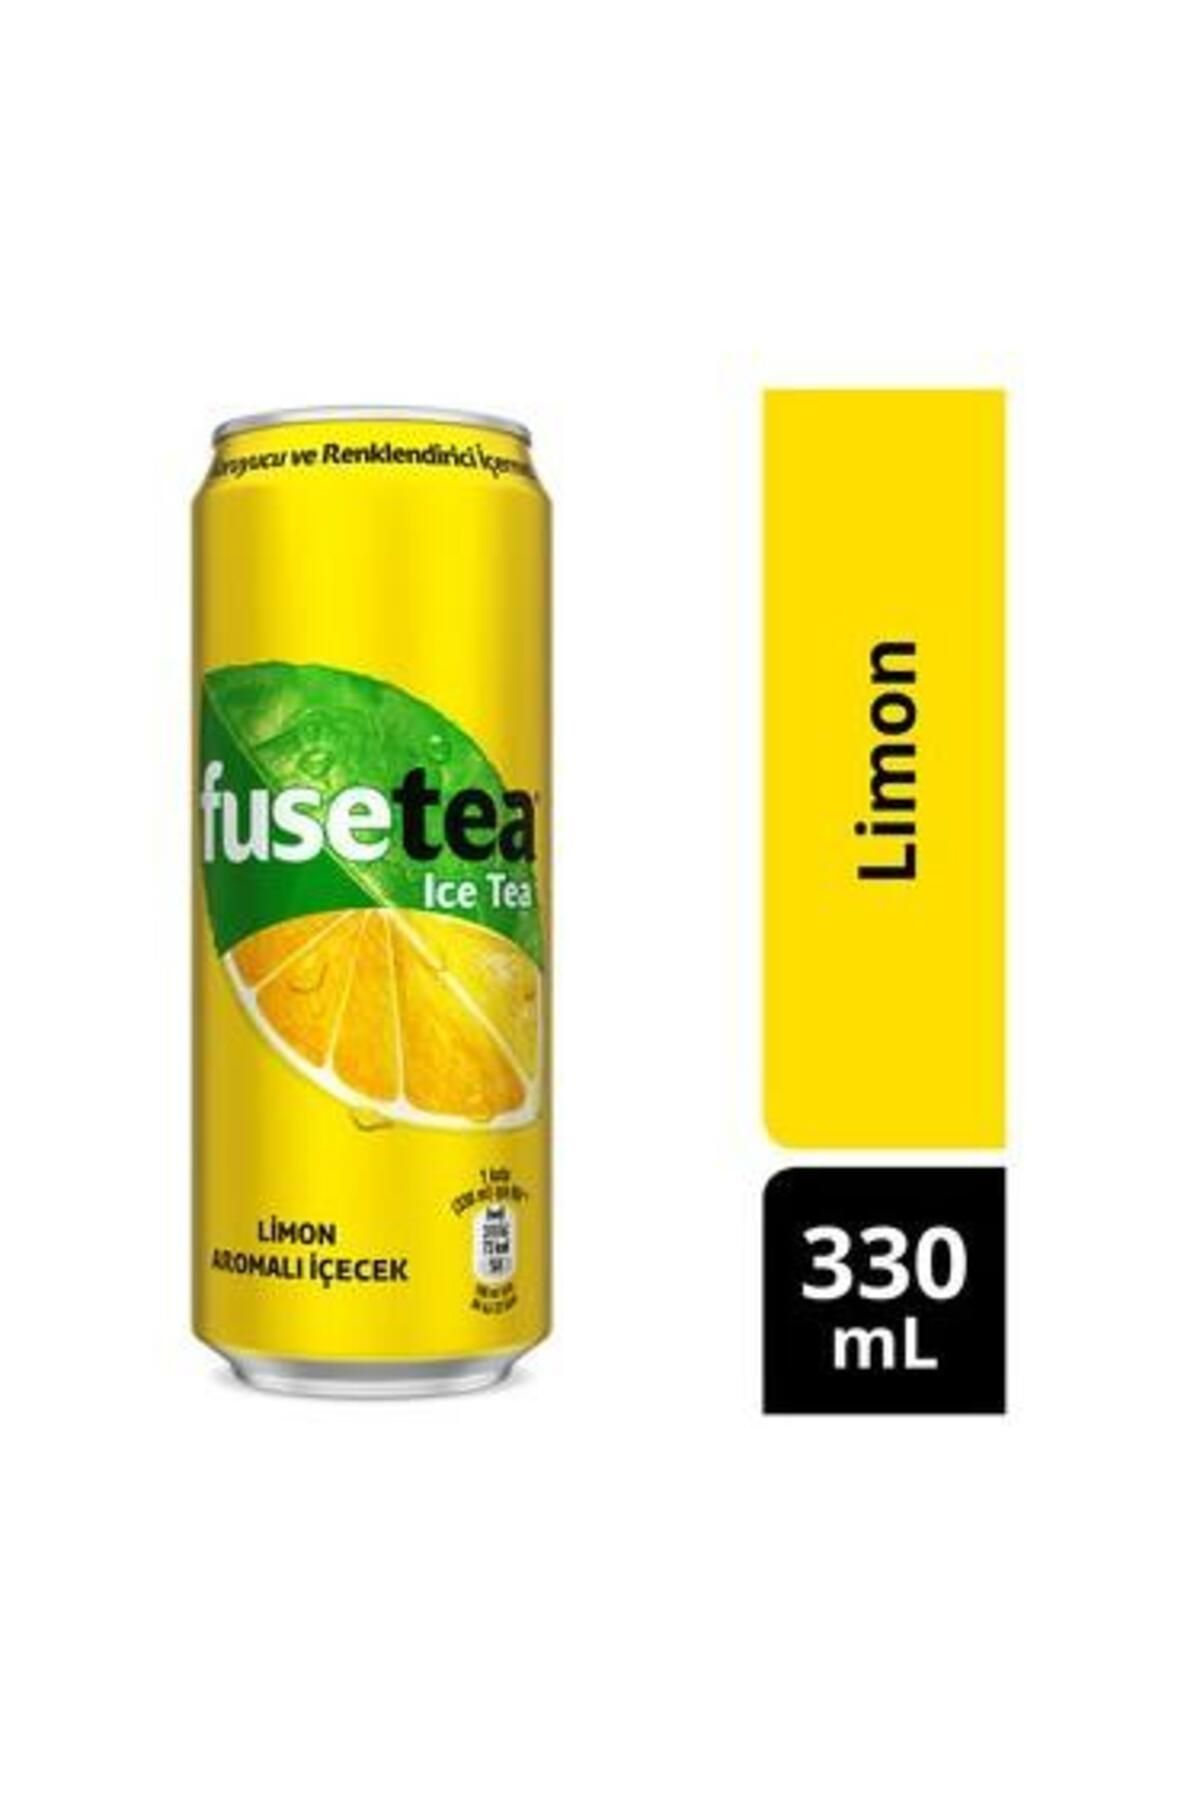 Fuse Tea Limon Kutu 330 Ml. (2'Lİ)